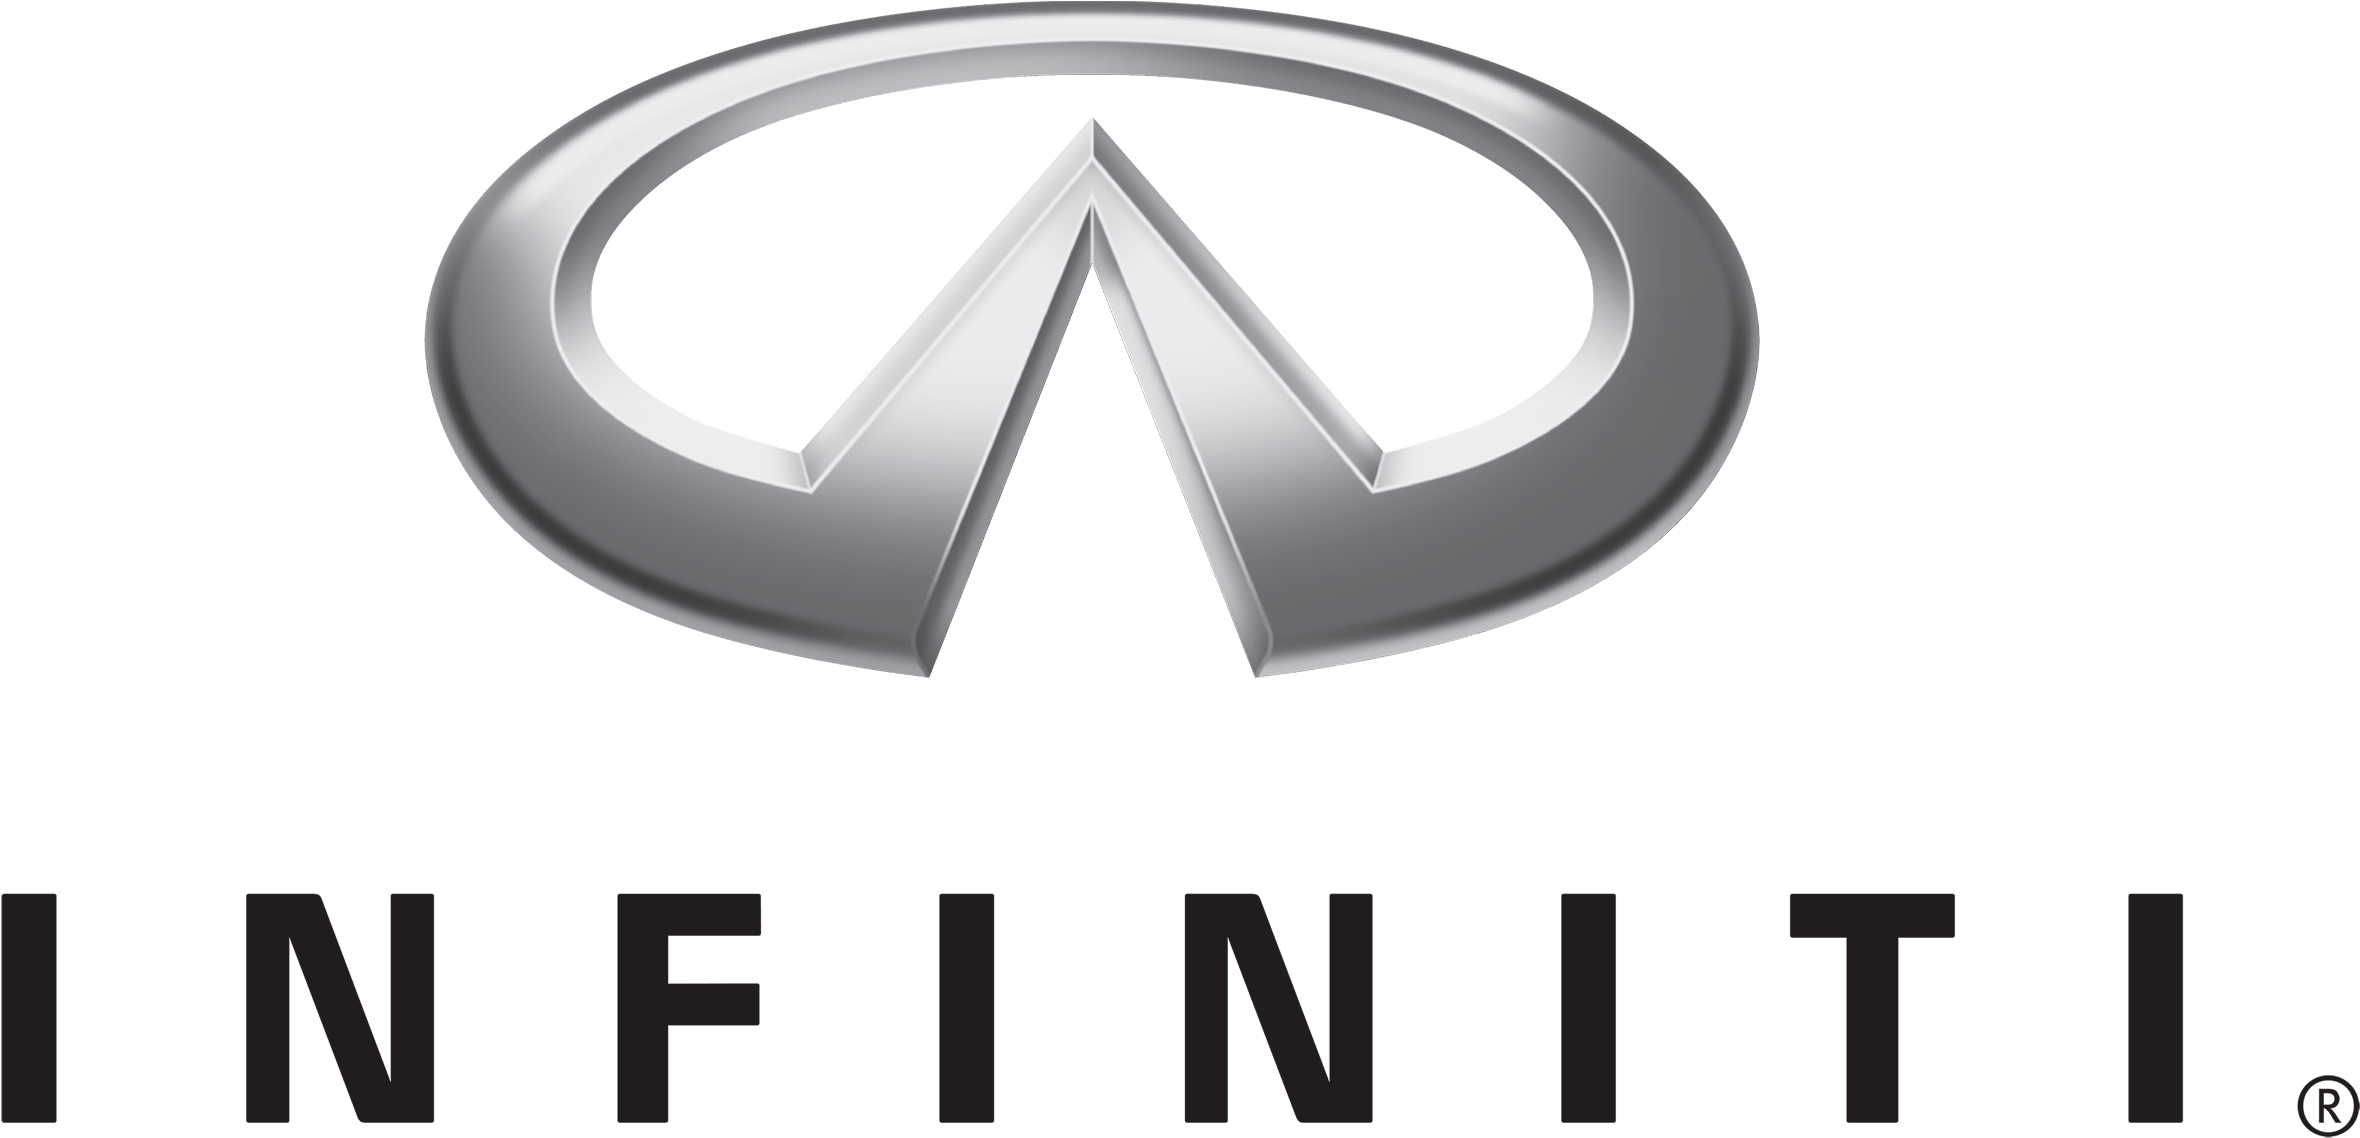 Car Logo Infiniti - Infiniti Car Sign Boobs (2560x1440)